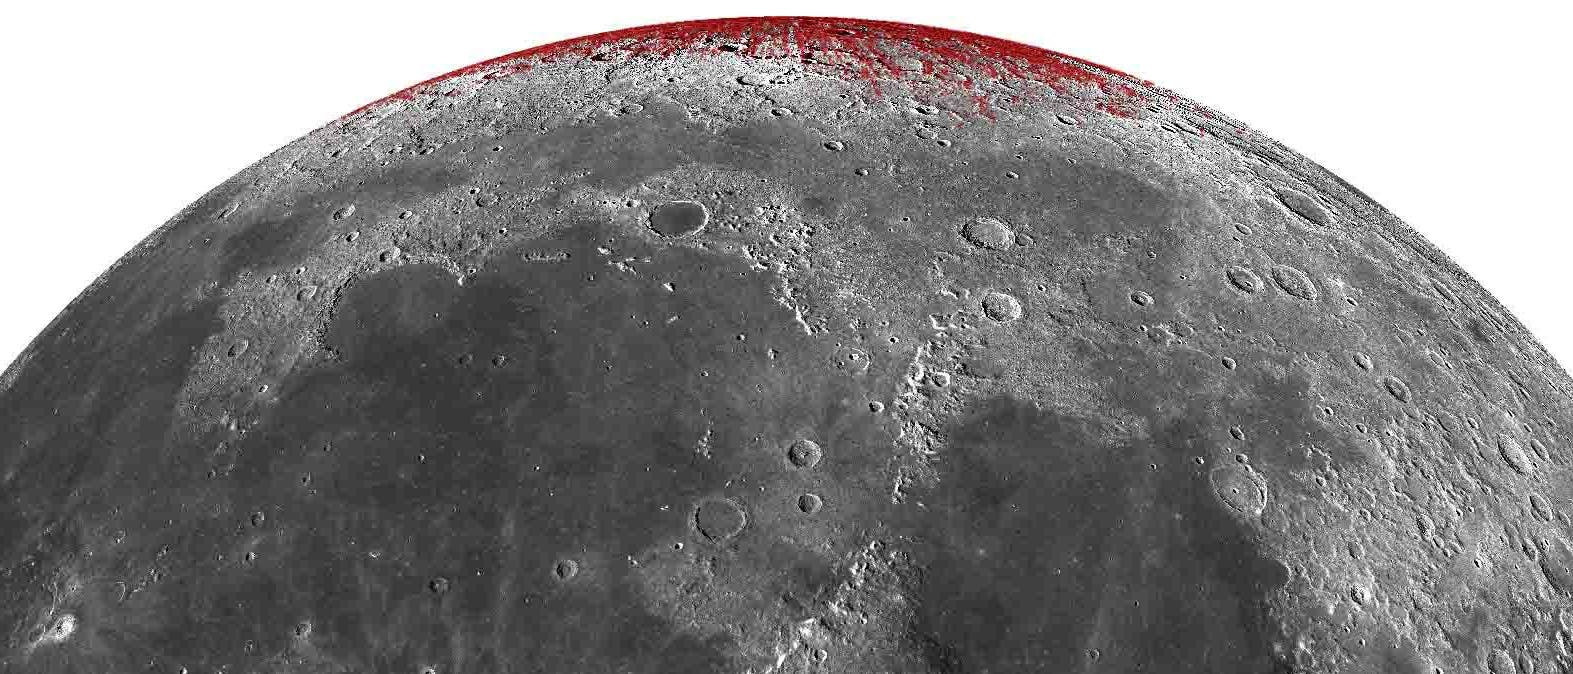 Der Mond der Erde: Die Regionen, in denen vermutlich Hämatit vorkommt, sind rot hervorgehoben.